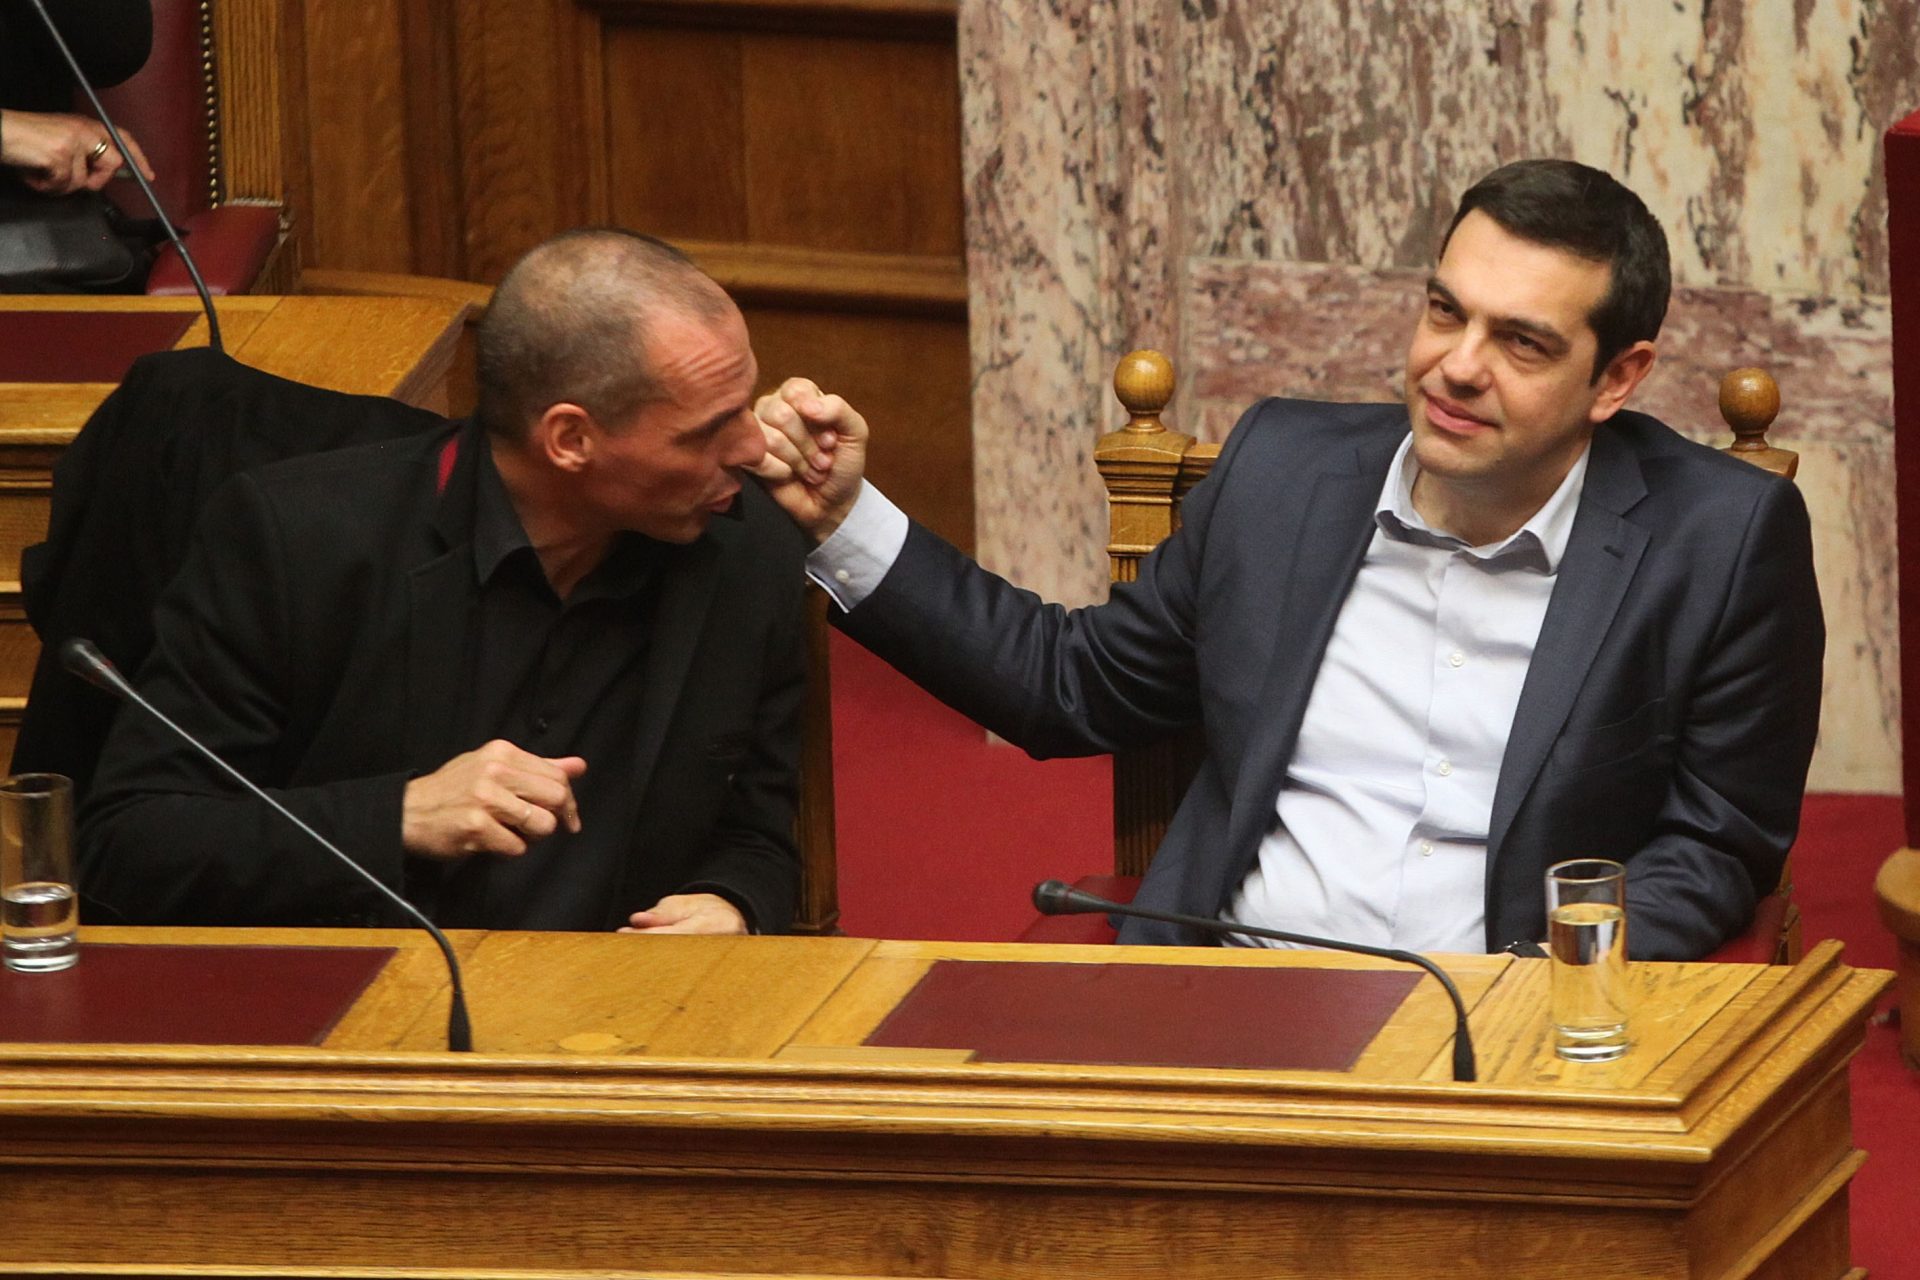 La main droite de Tsipras